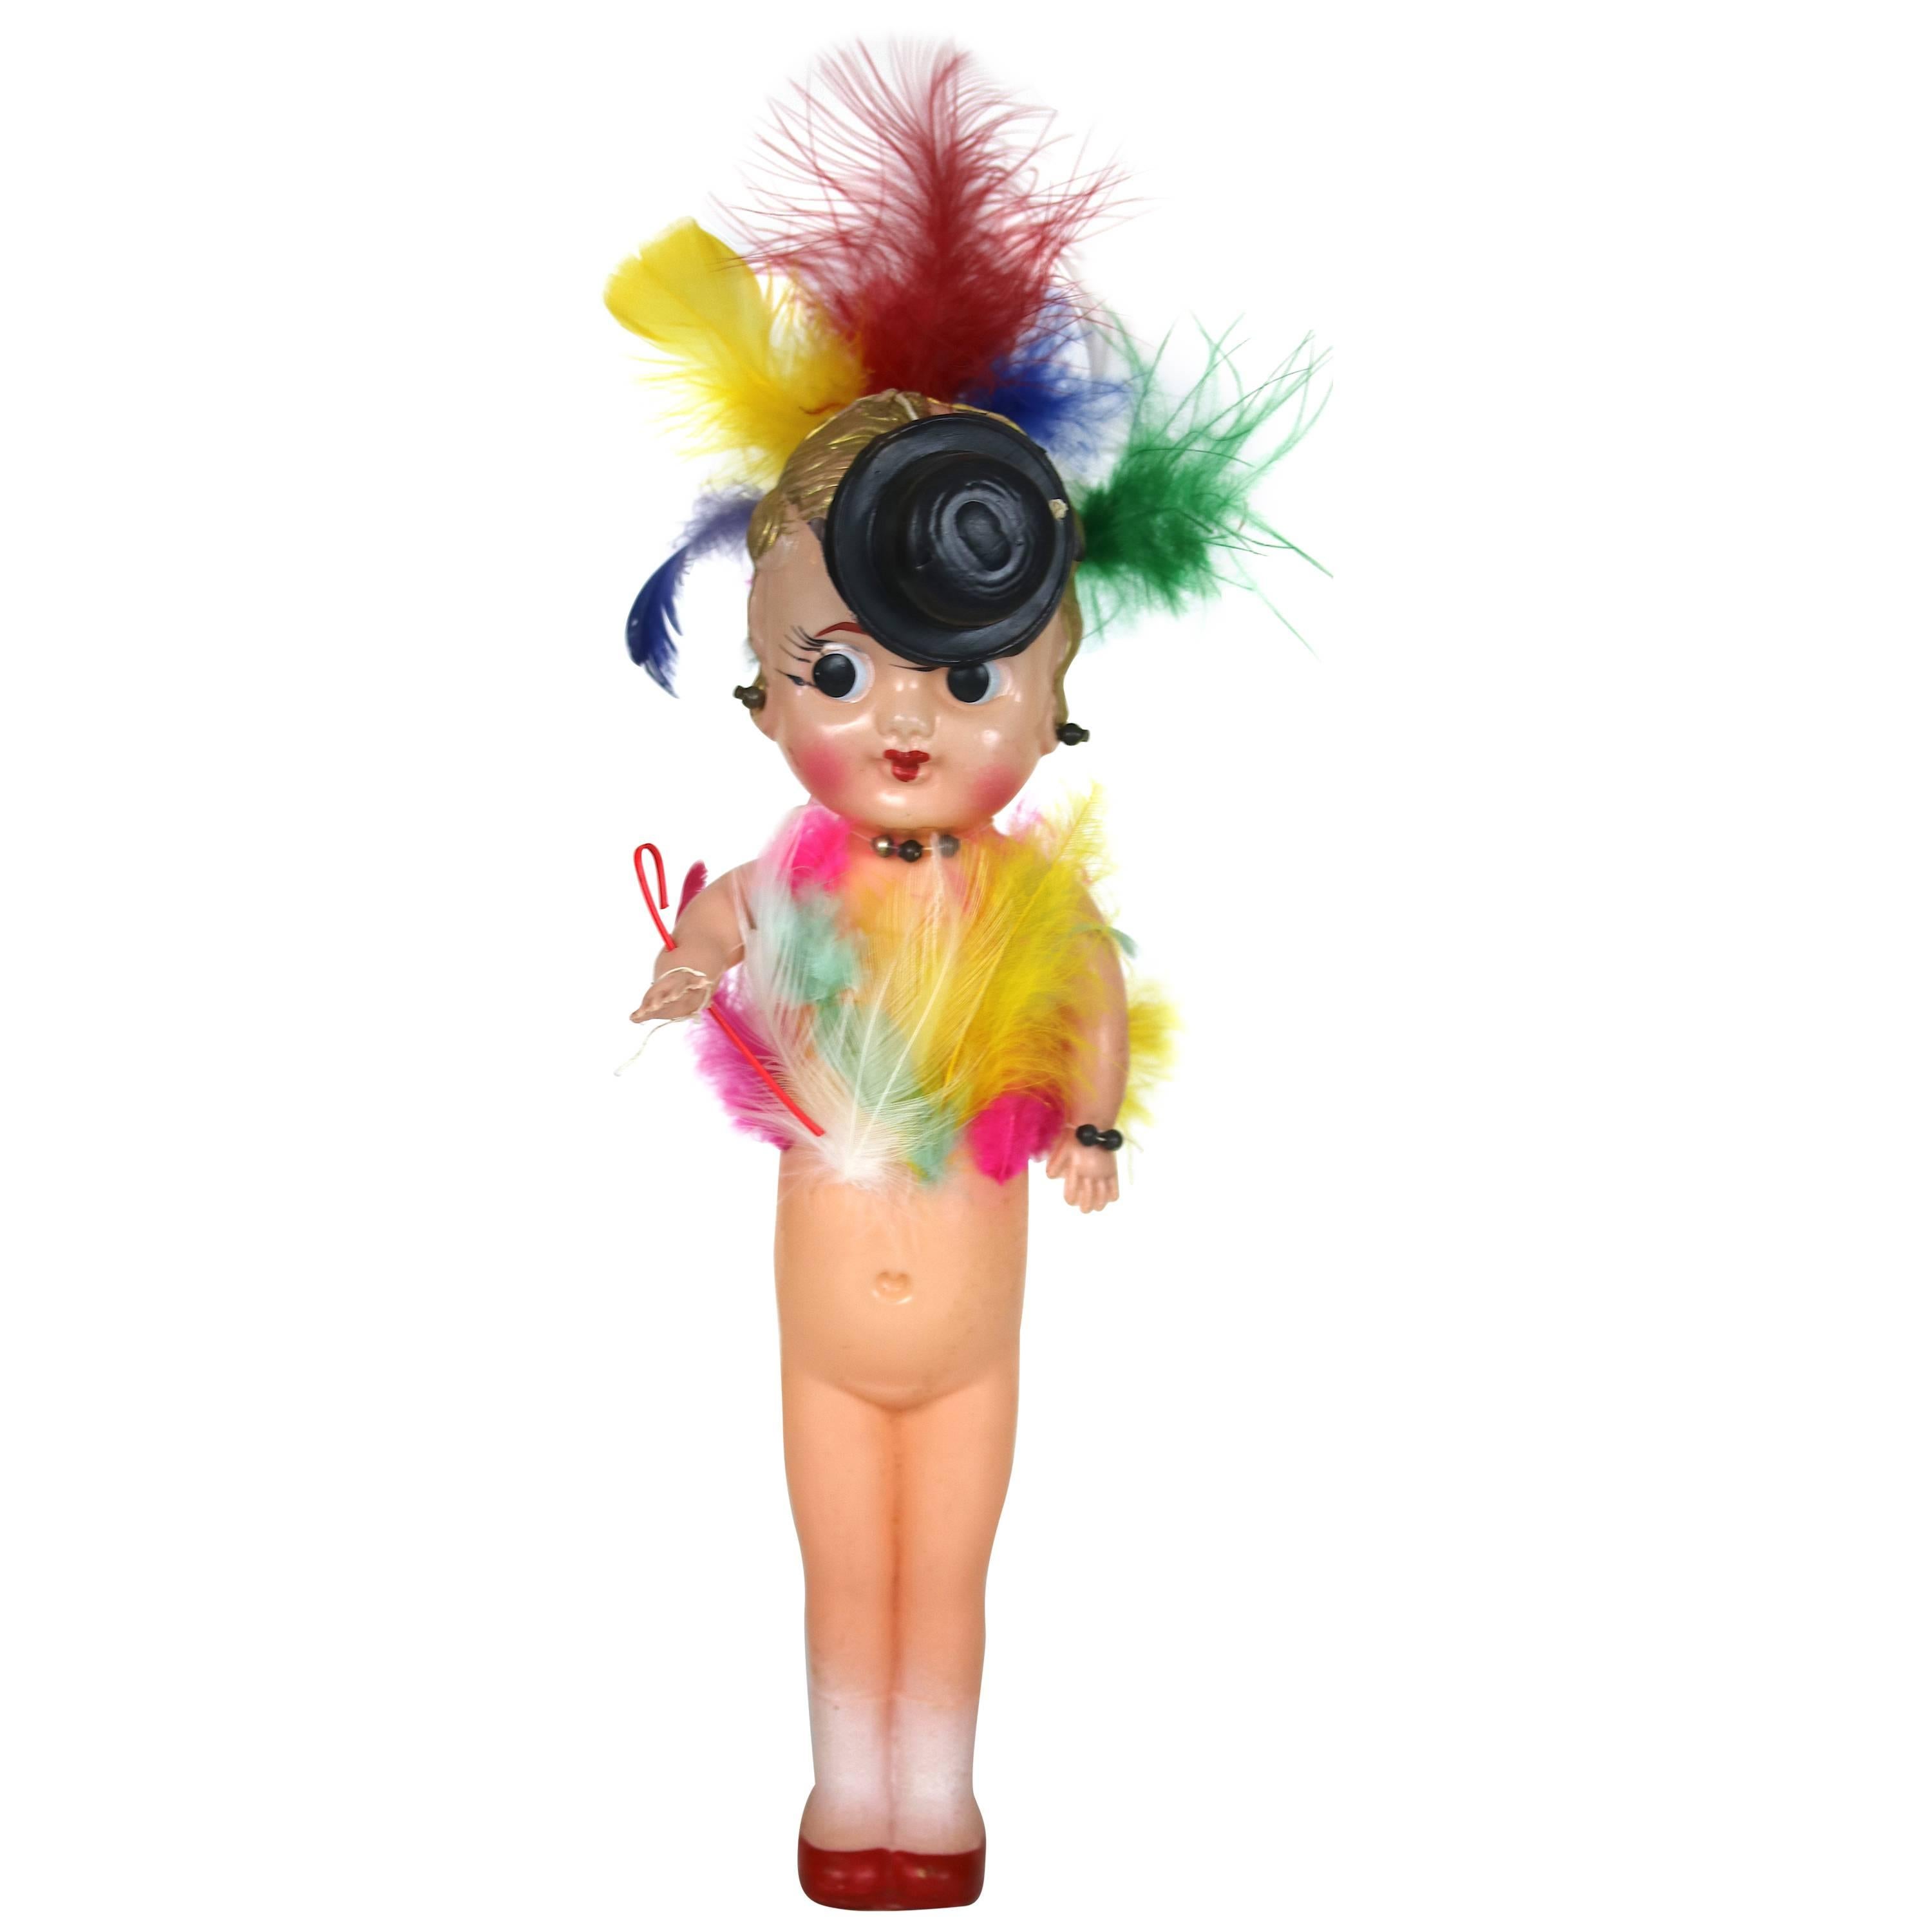 Antique Carnival Dolls - 3 For Sale on 1stDibs  vintage carnival dolls,  carnival kewpie dolls, vintage carnival kewpie dolls